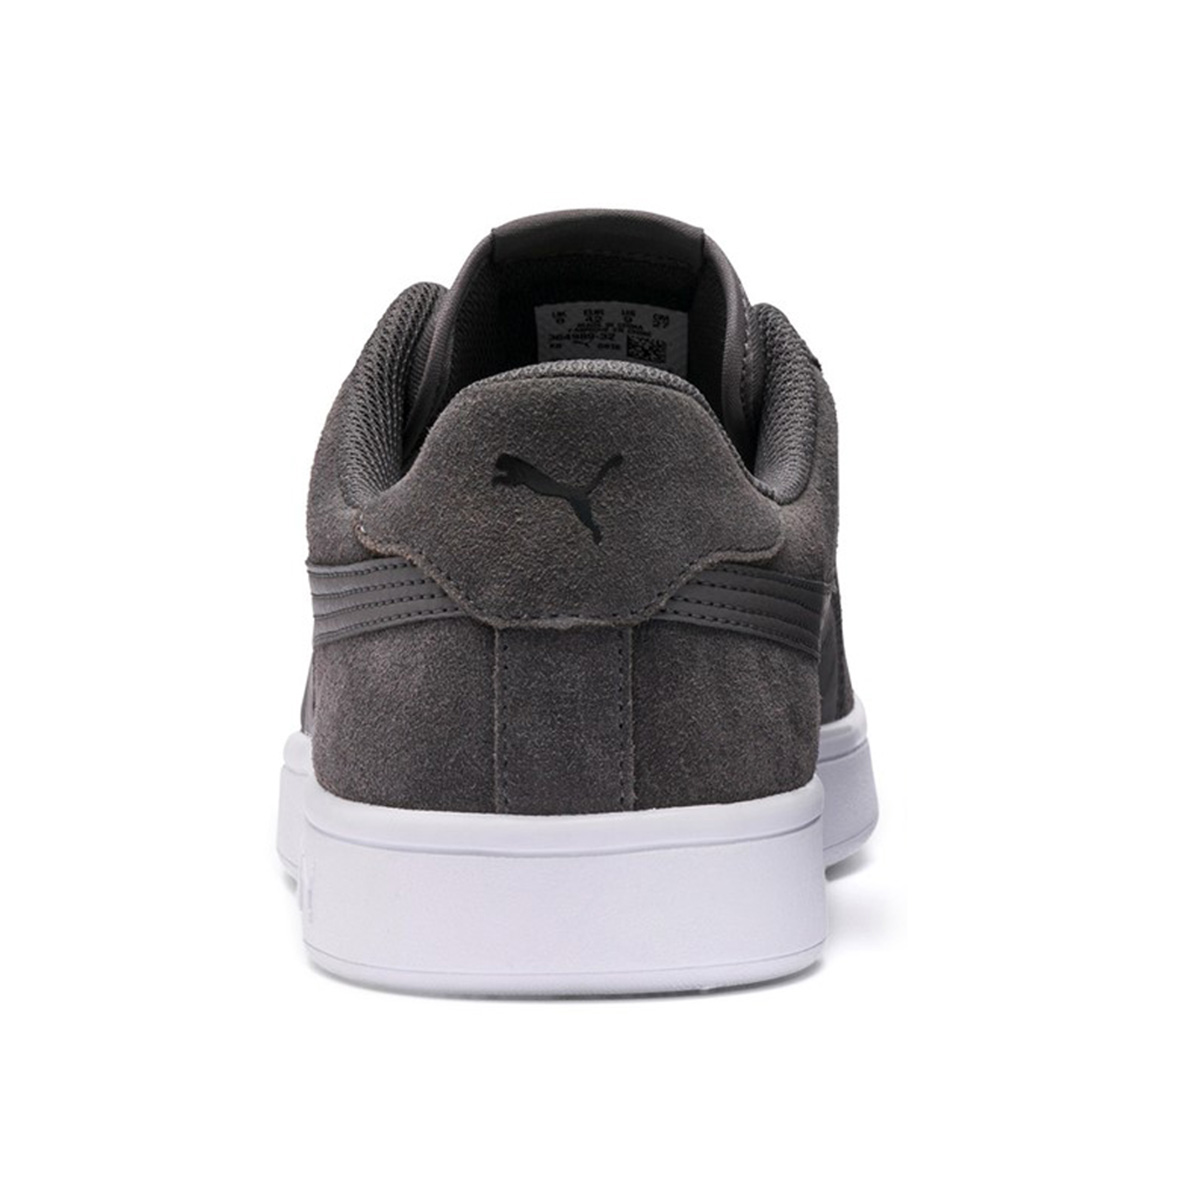 Puma Smash v2 Unisex Sneaker Schuh grau 364989 32